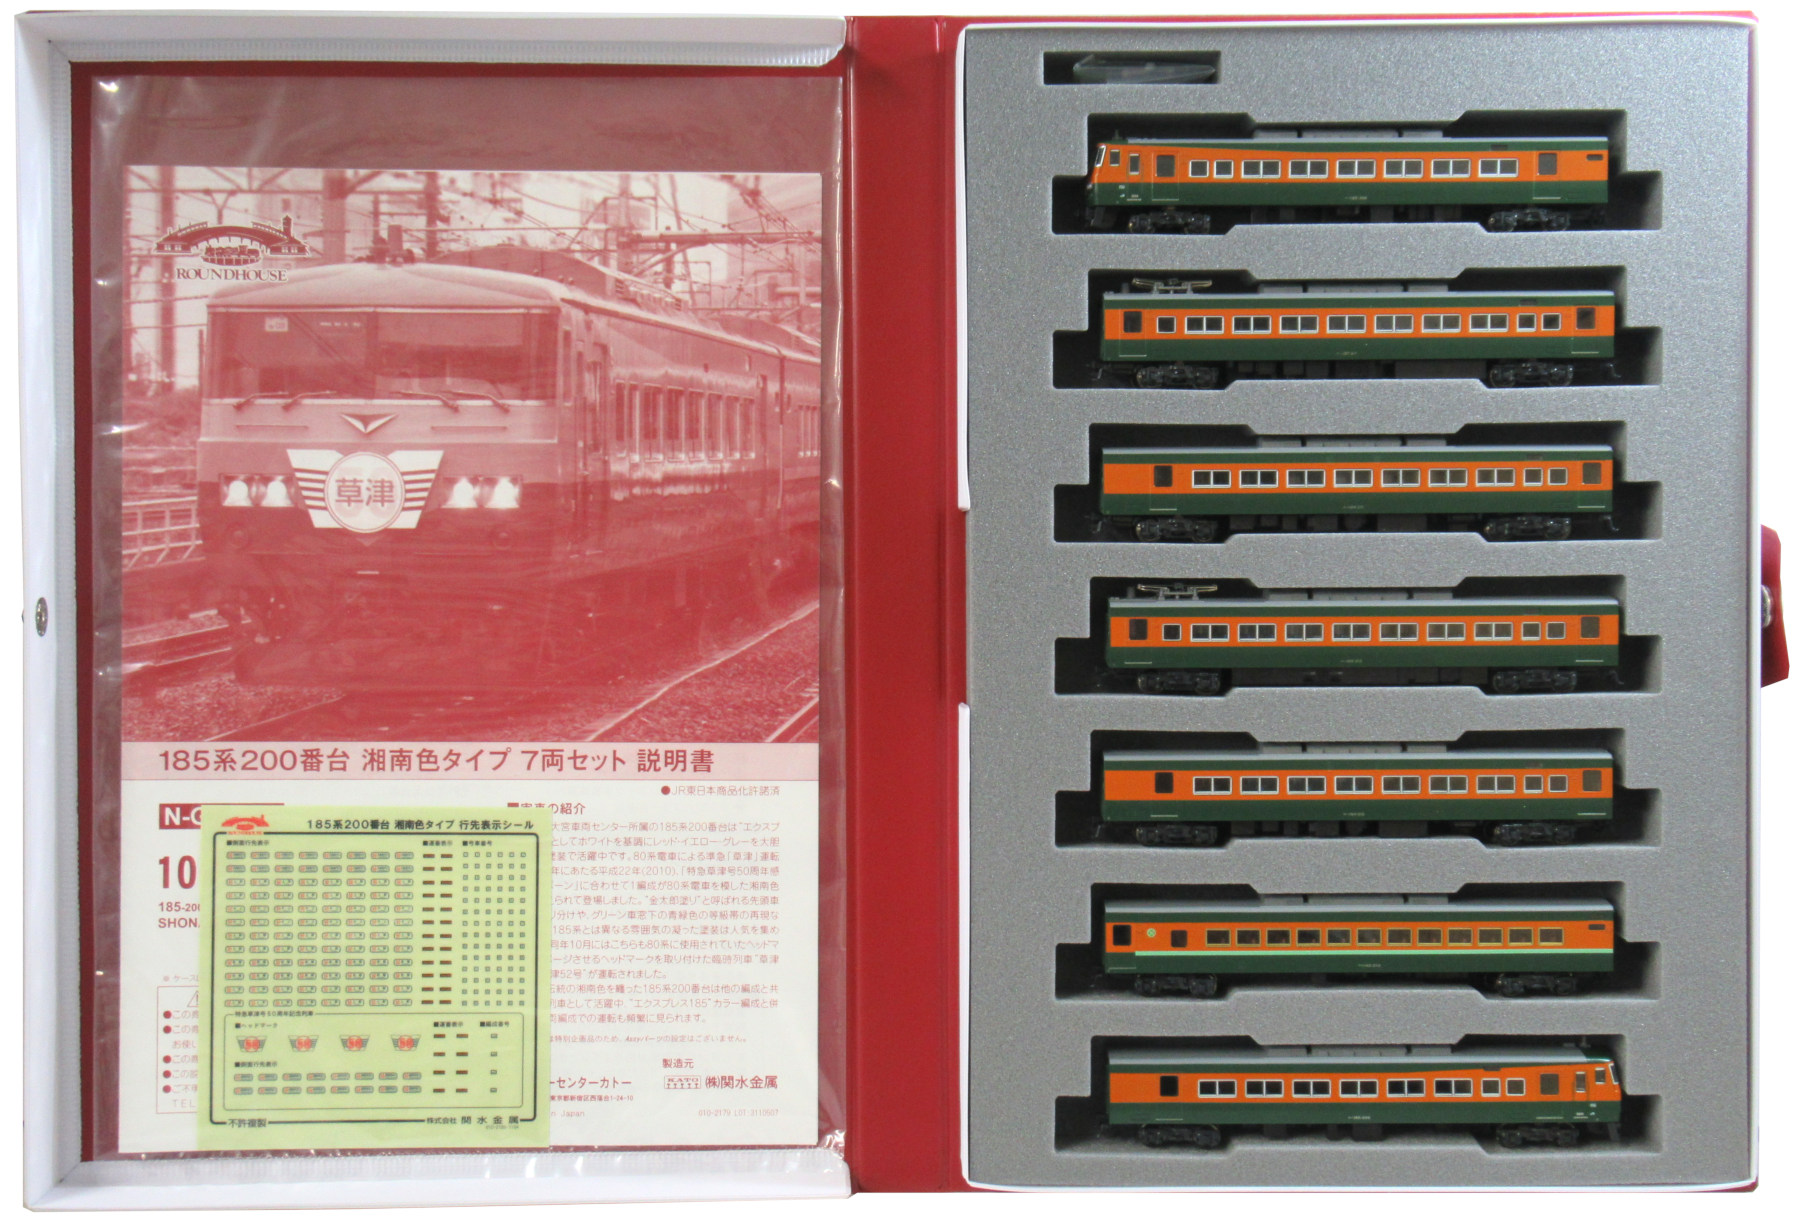 公式]鉄道模型(JR・国鉄 形式別(N)、特急形車両、185系)カテゴリ 